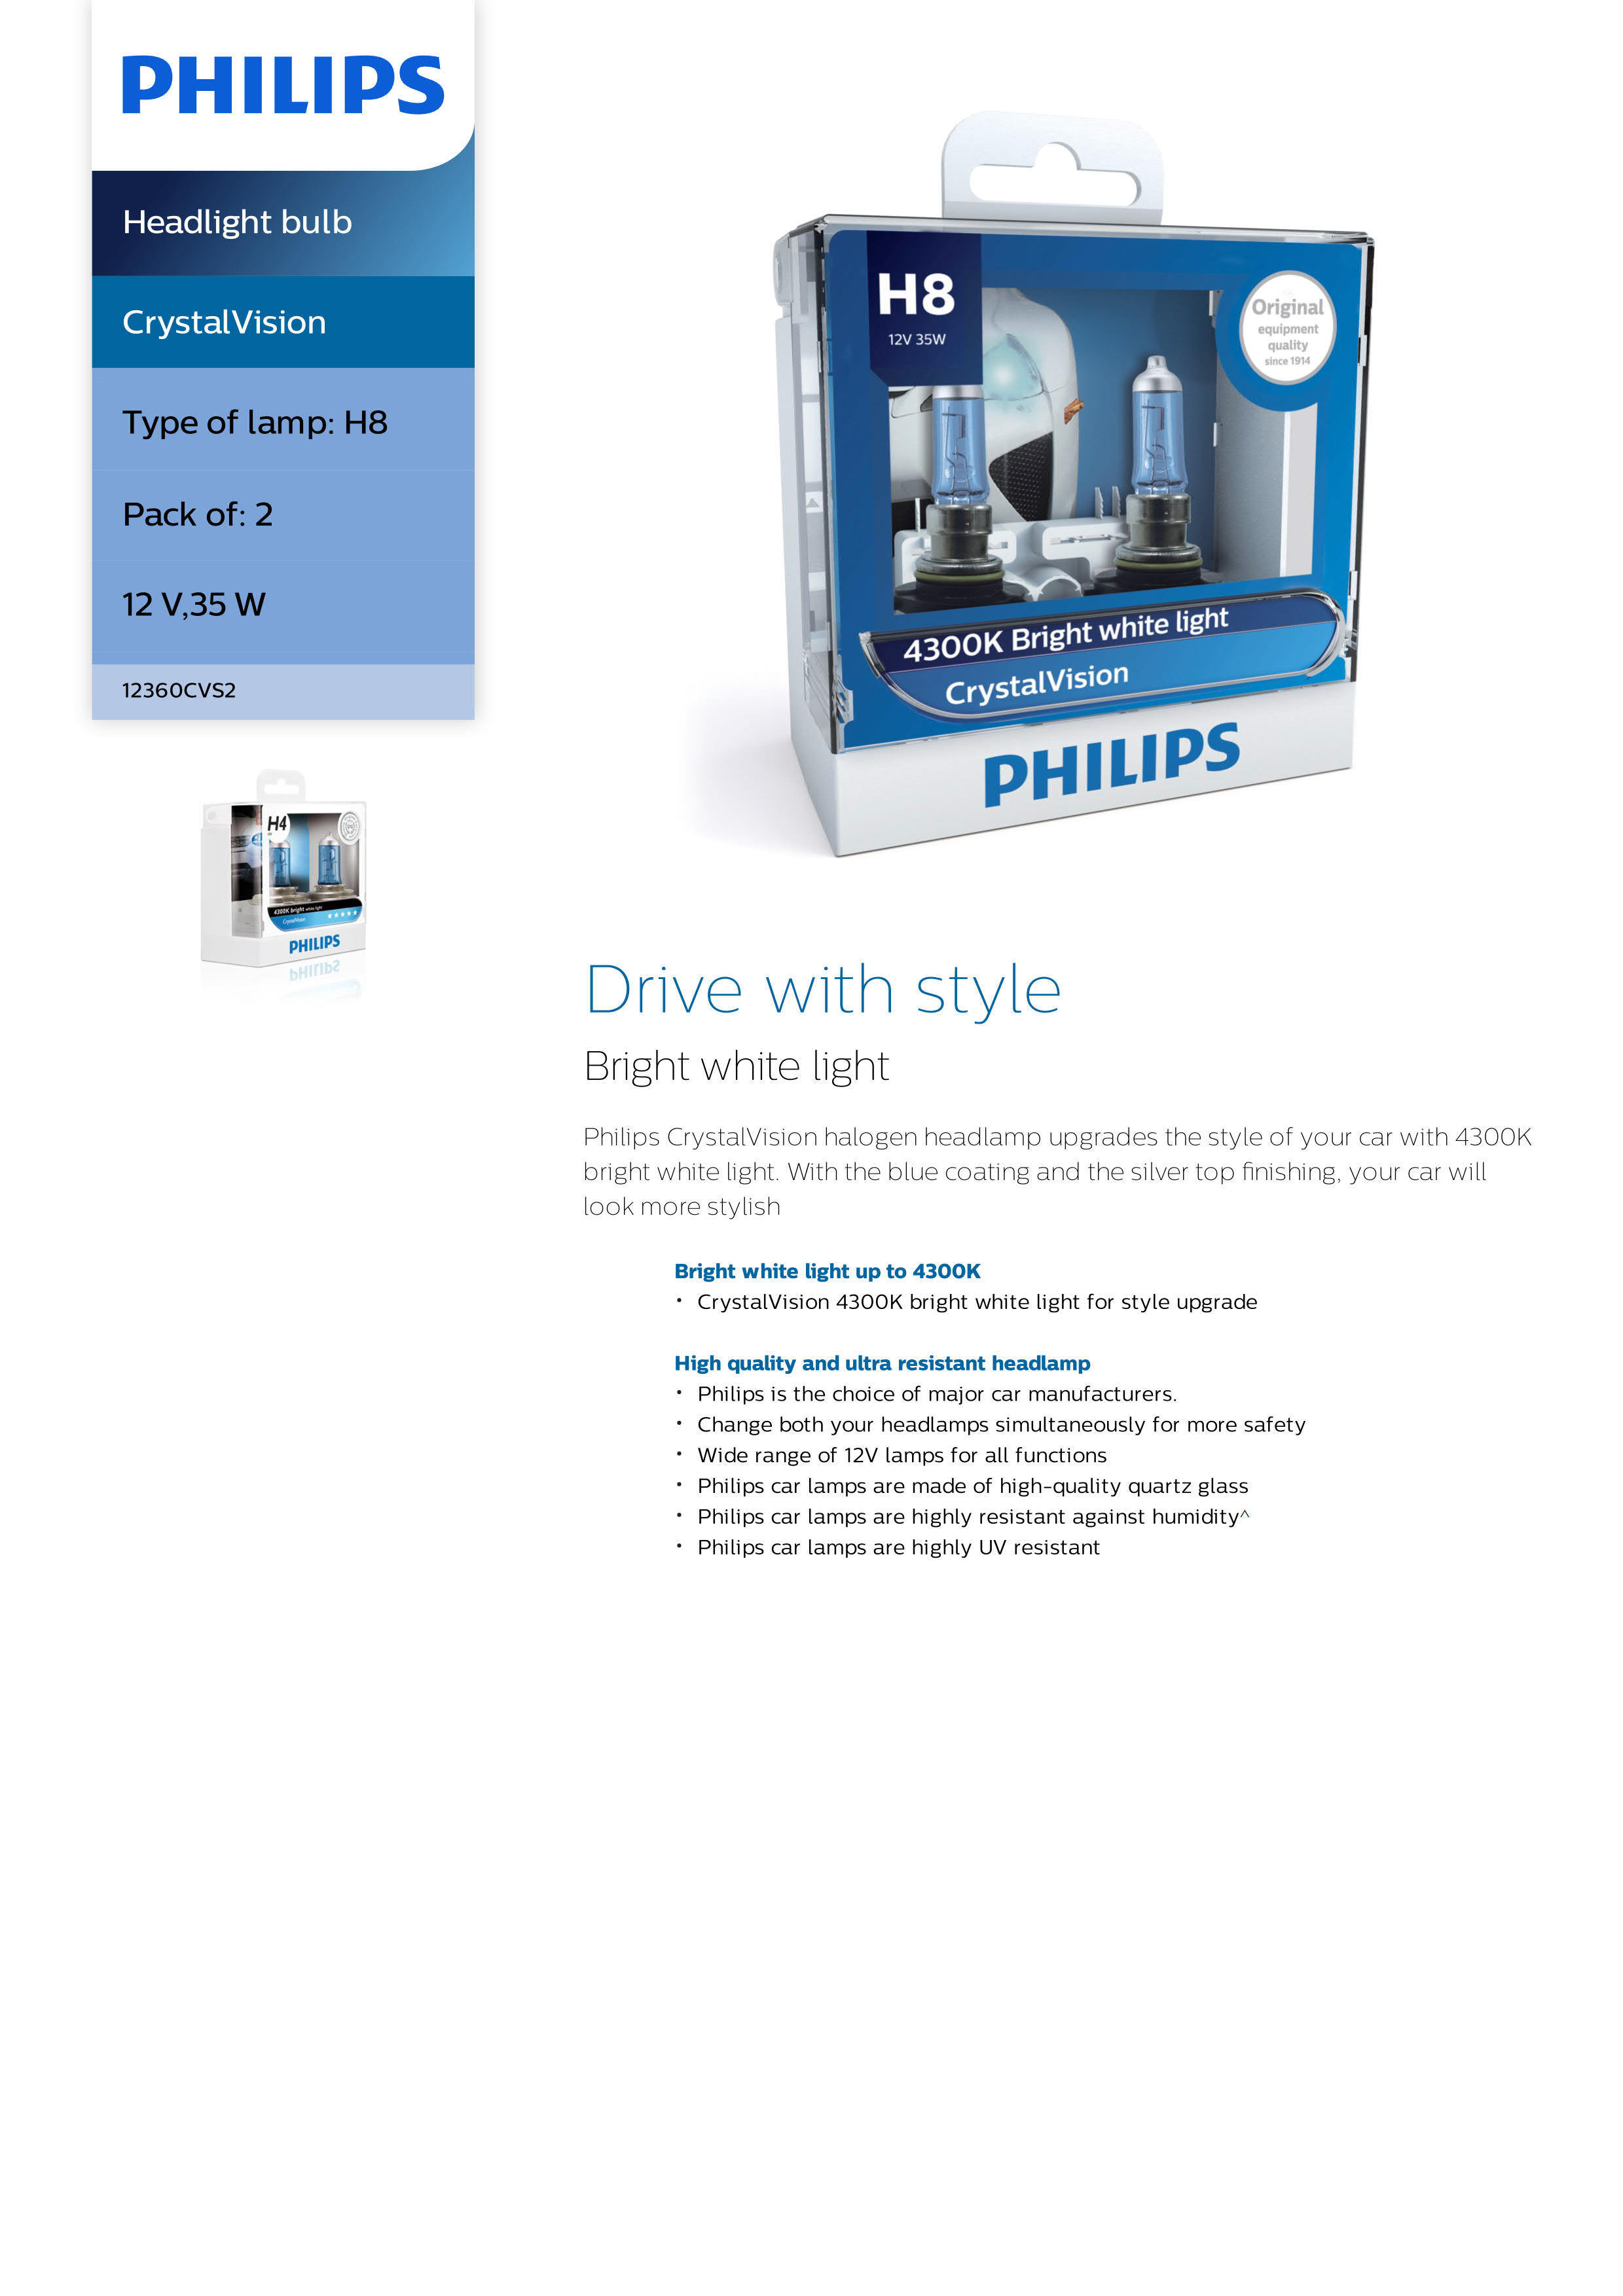 PHILIPS CrystalVision Headlight bulb H8 12V 35W PGJ19-1 12360CVS2 867000118988